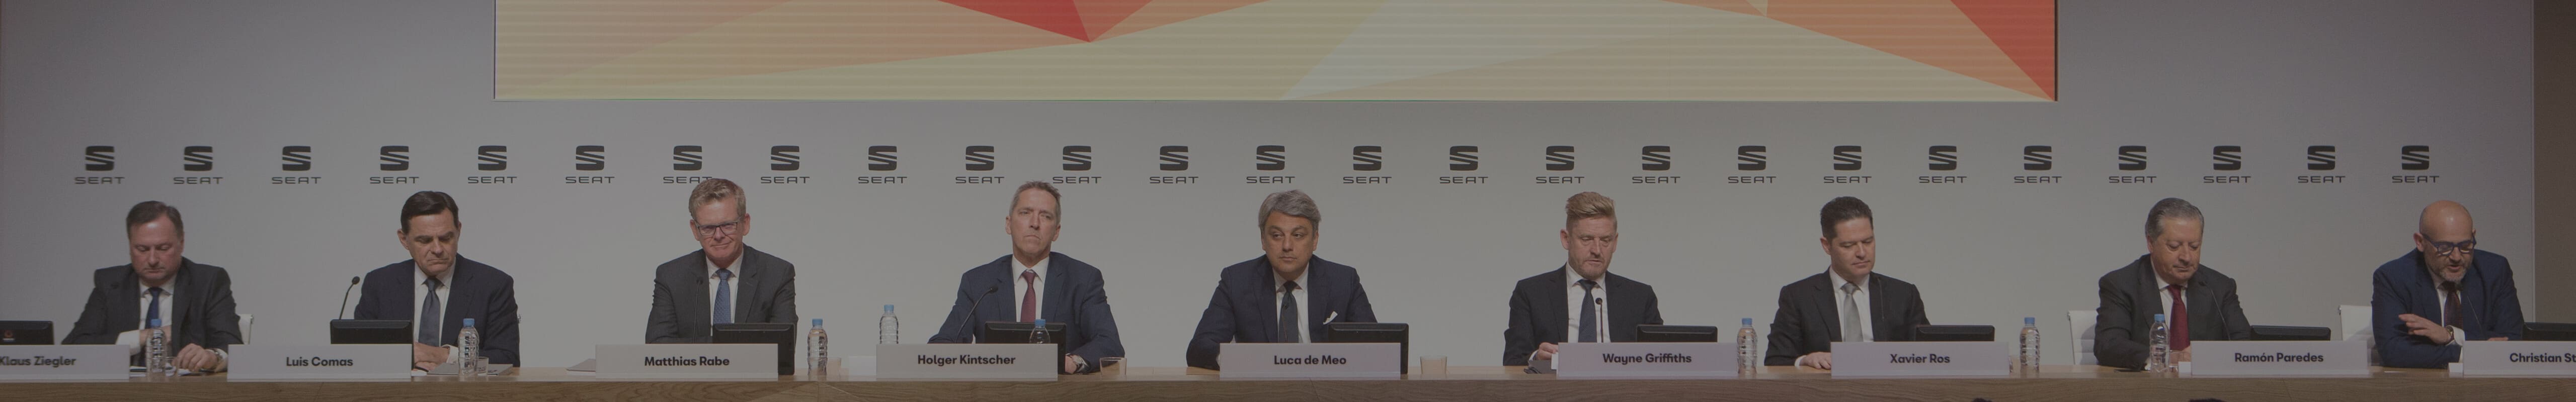 Rekordowy rok – komitet dyrektorów SEAT-a. Prezes Luca de Meo podczas corocznej konferencji prasowej w 2018 roku